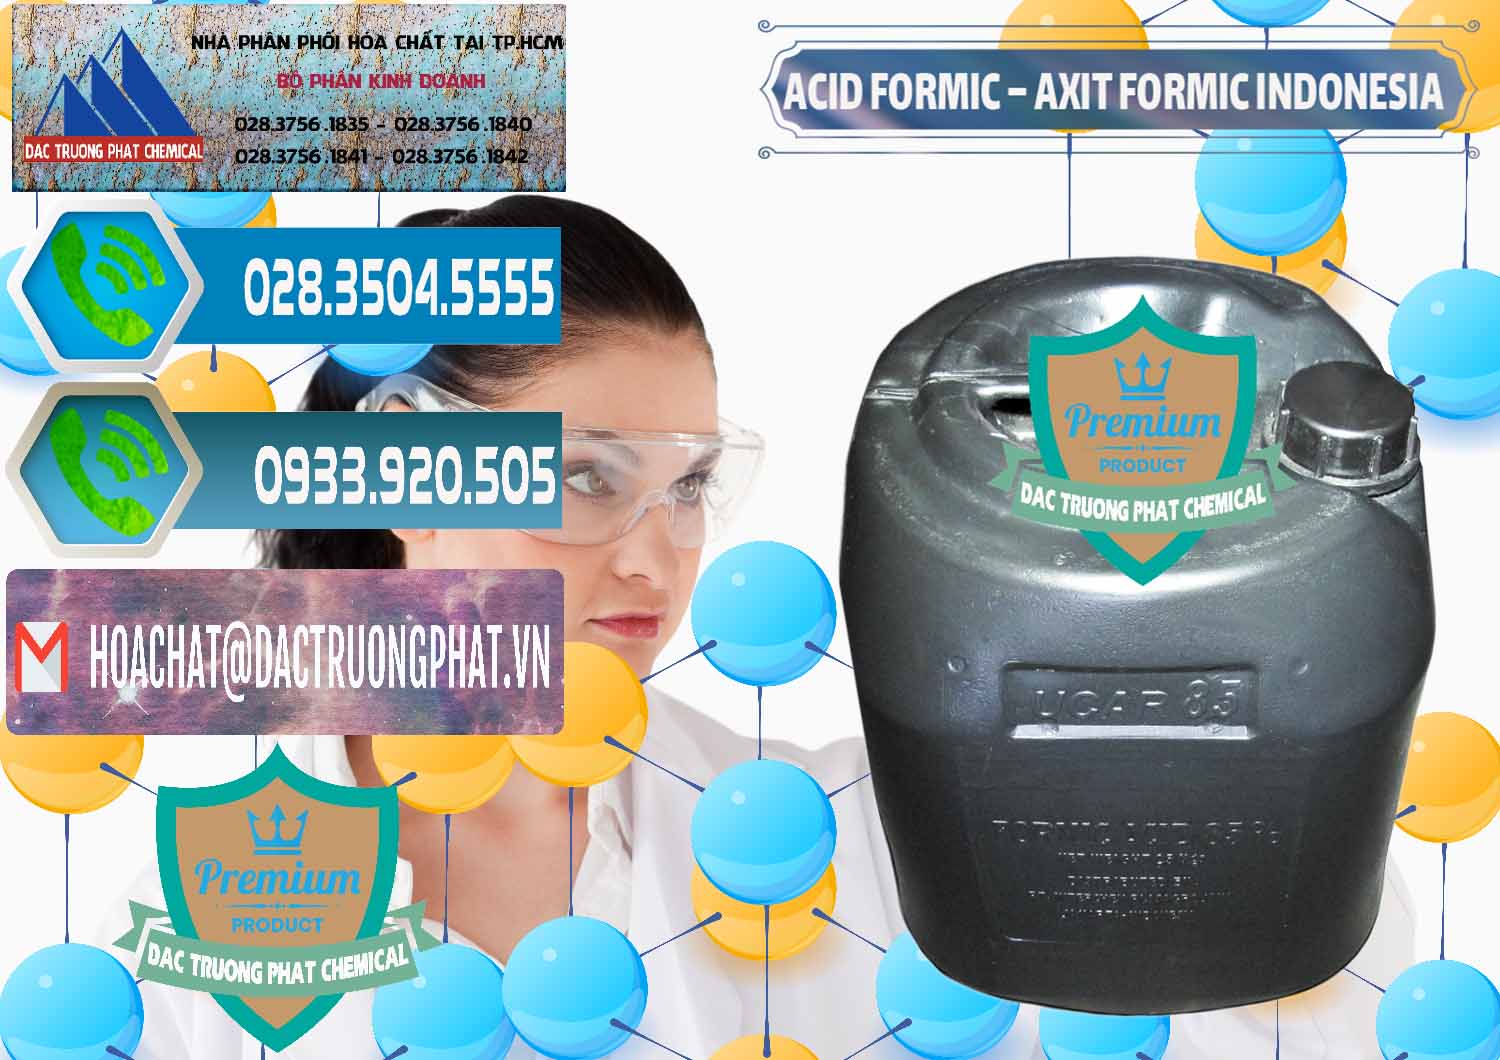 Cty kinh doanh _ bán Acid Formic - Axit Formic Indonesia - 0026 - Cty cung cấp - phân phối hóa chất tại TP.HCM - congtyhoachat.net